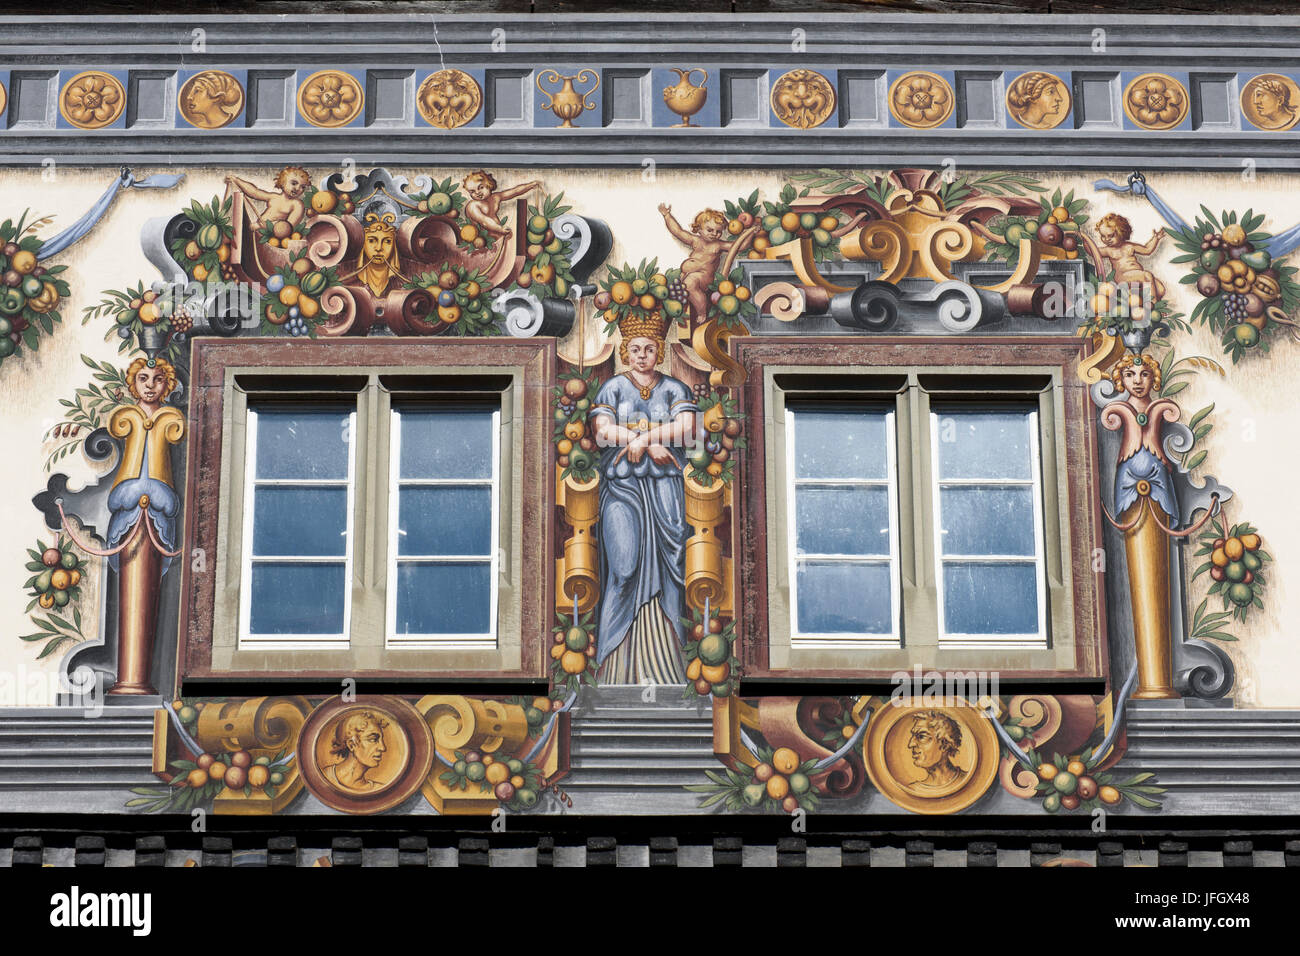 Wohnturm zum Goldenen Löwen: Altstadt, Constance, Bodensee, Baden-Württemberg, Deutschland Stockfoto